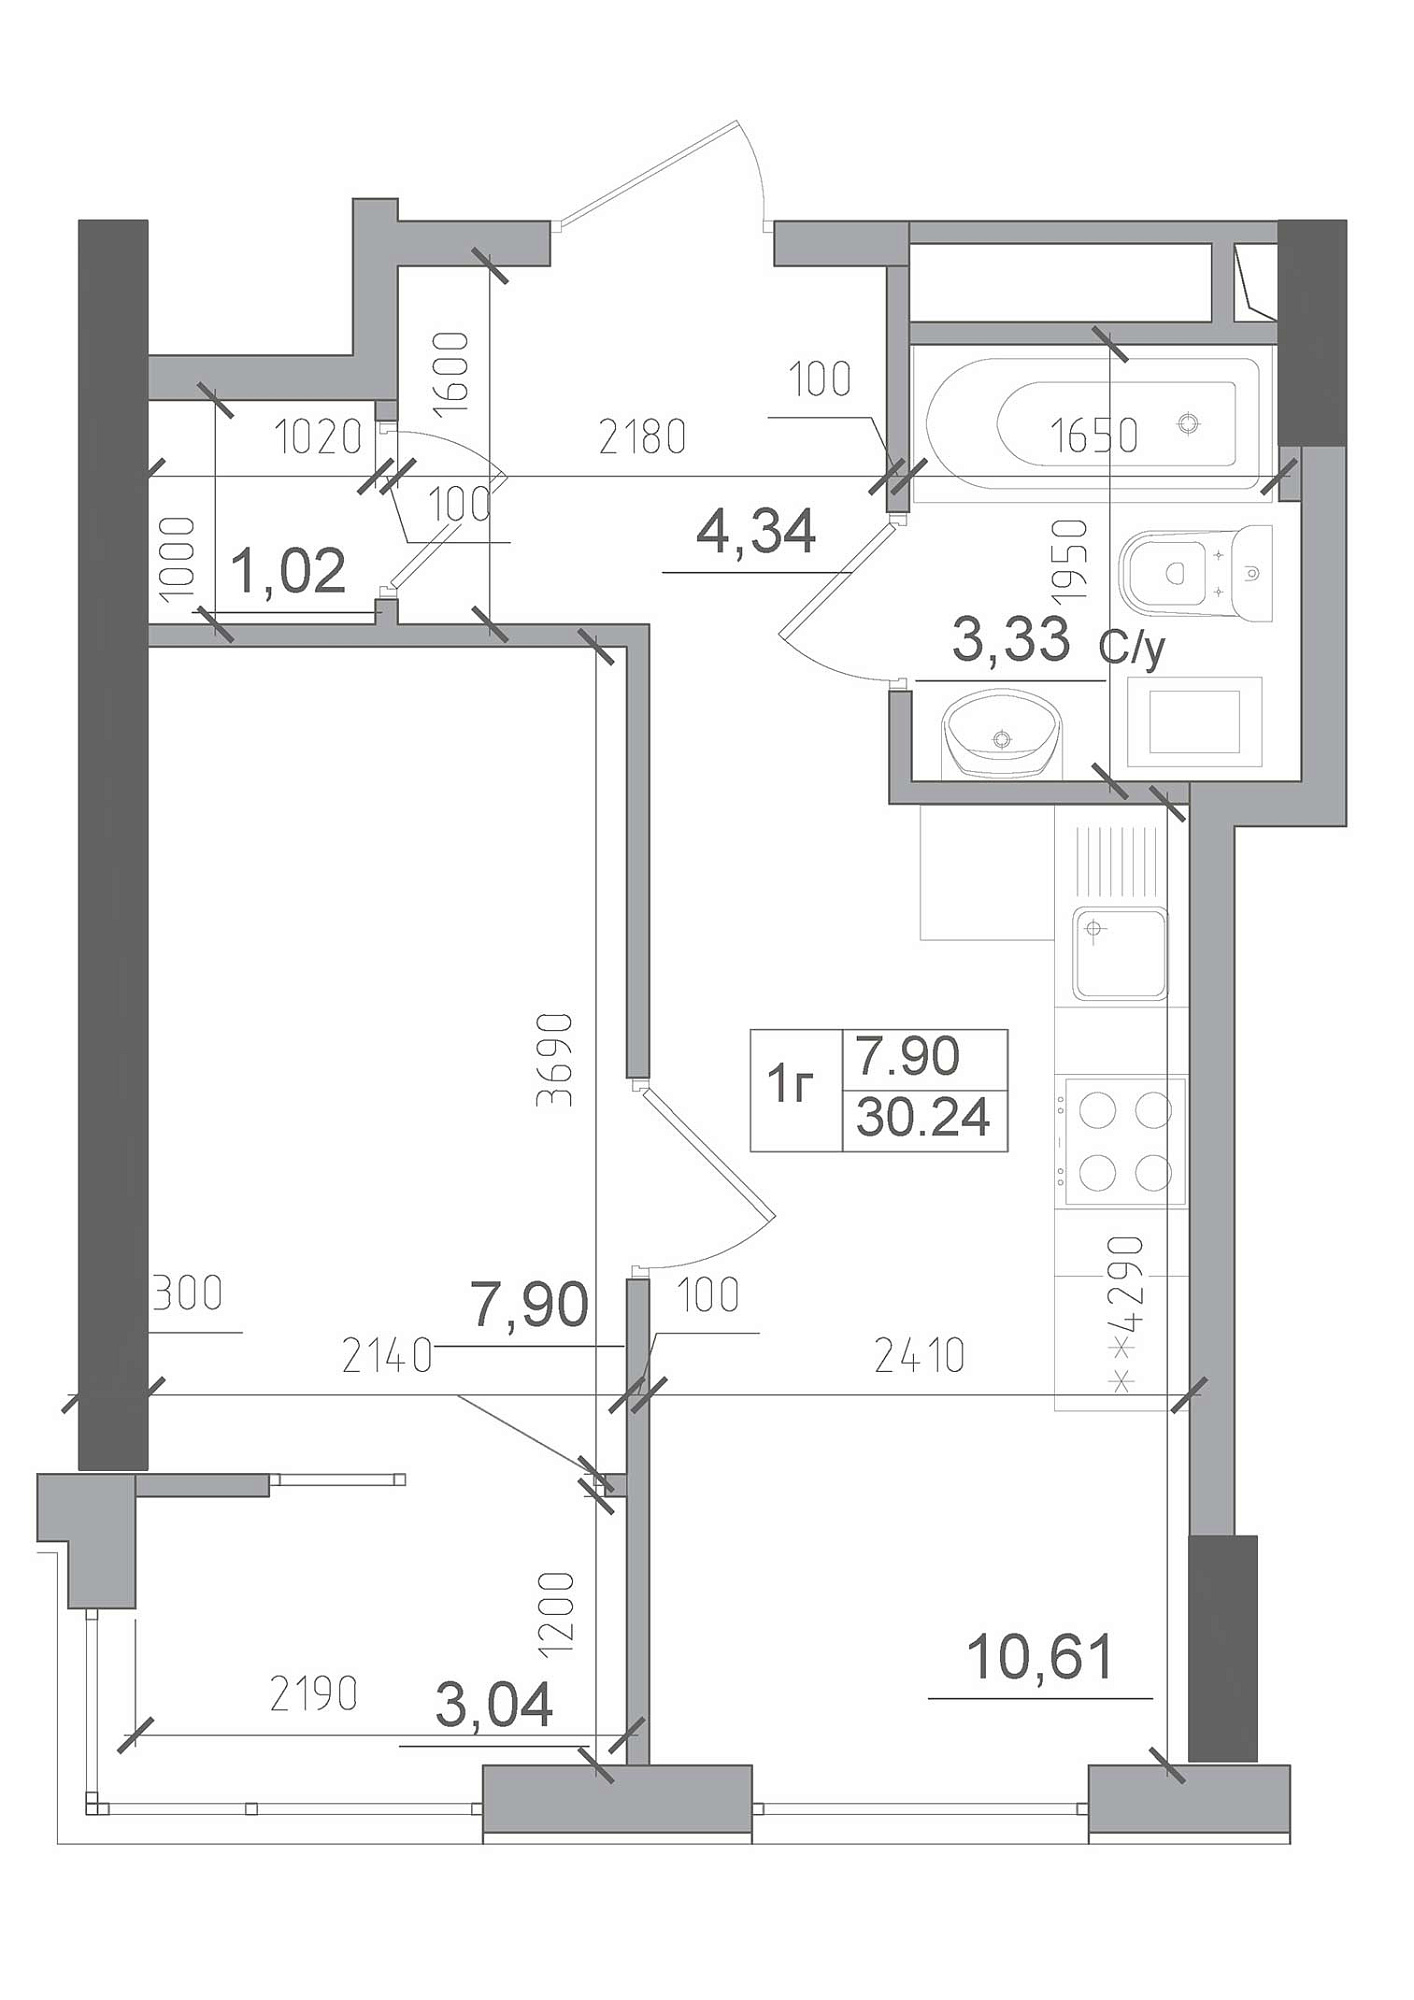 Планировка 1-к квартира площей 30.24м2, AB-22-01/00005.